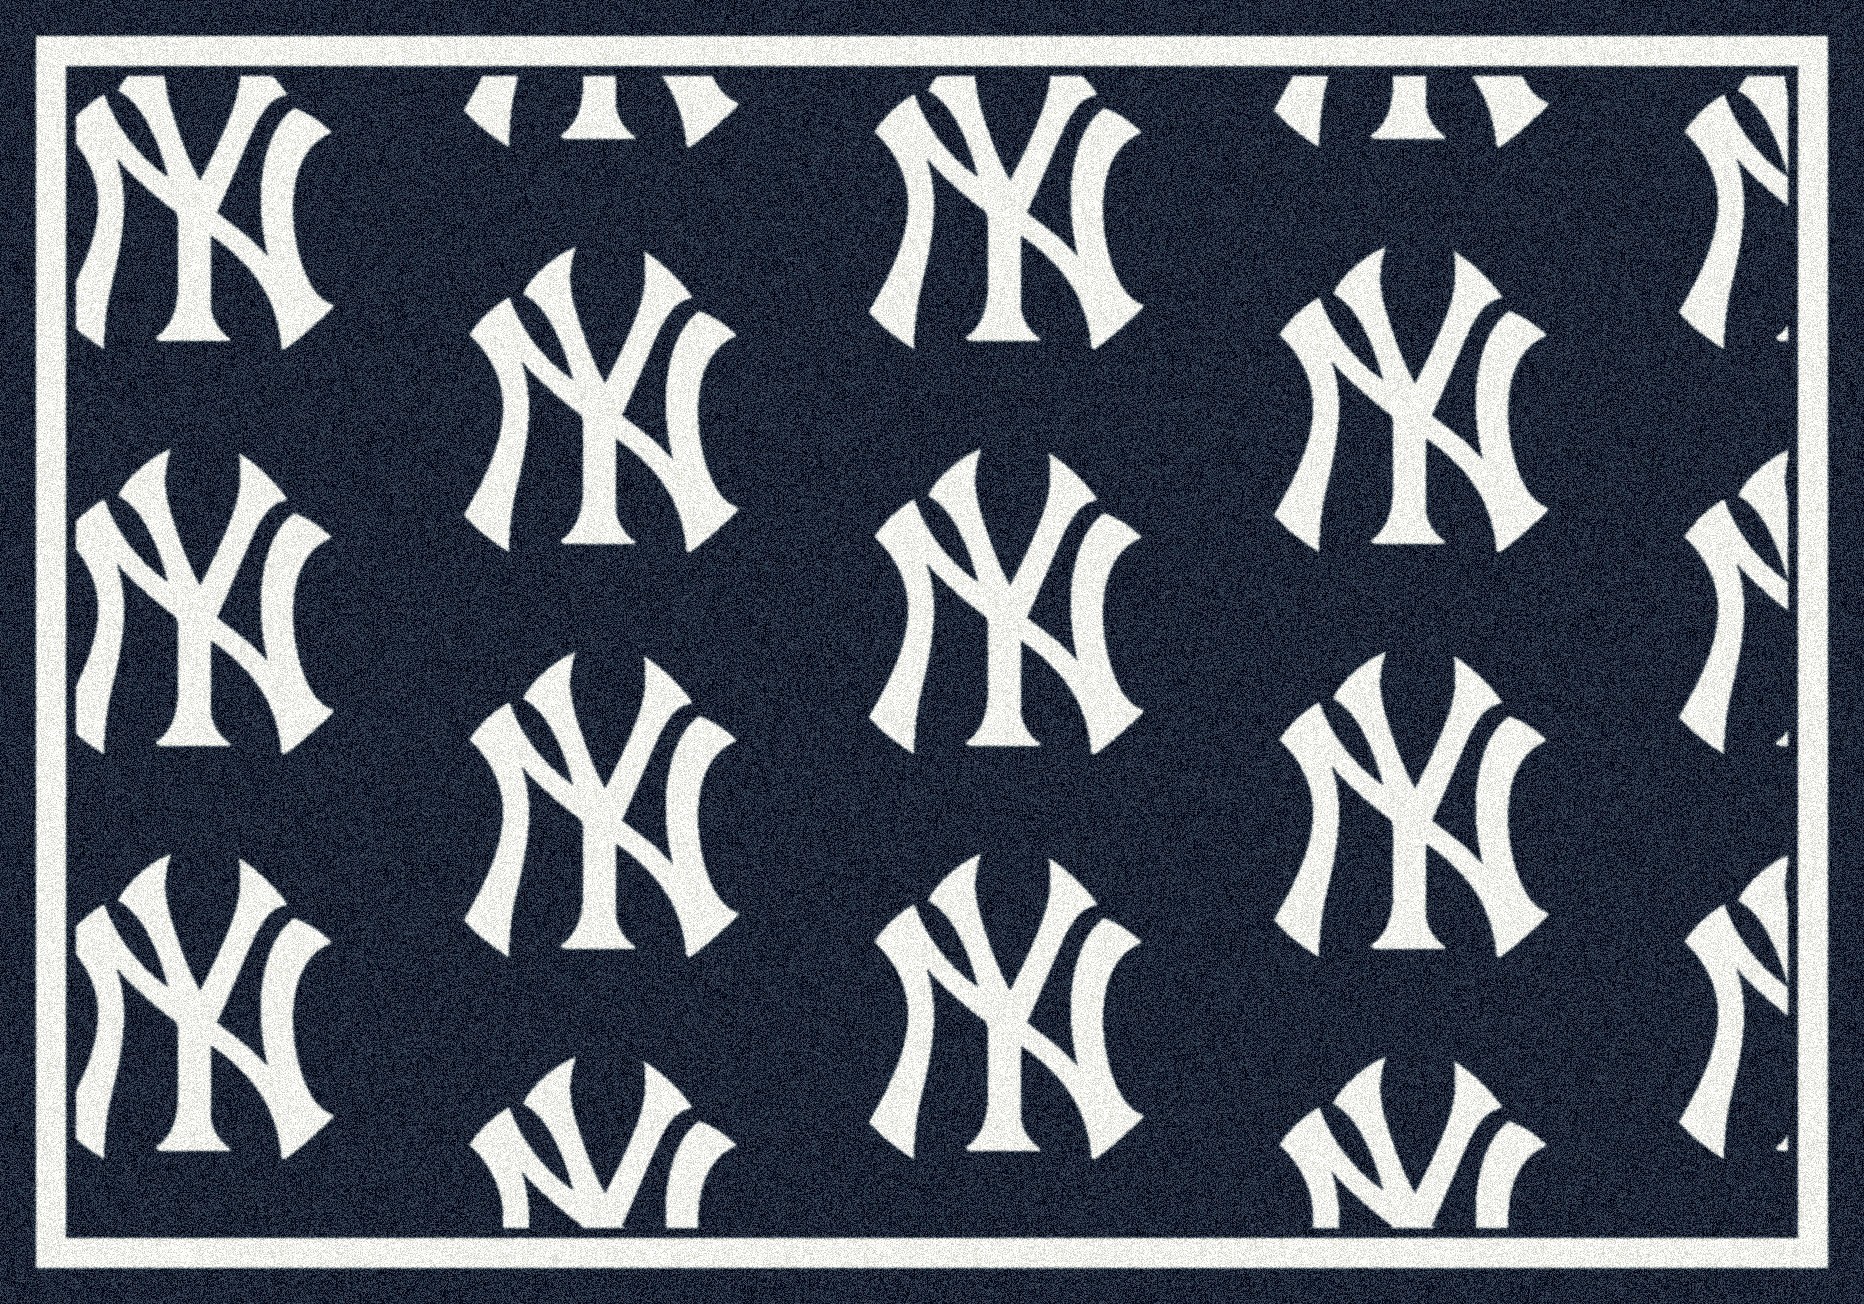 New York Yankees Baseball Mlb Fk Wallpaper By